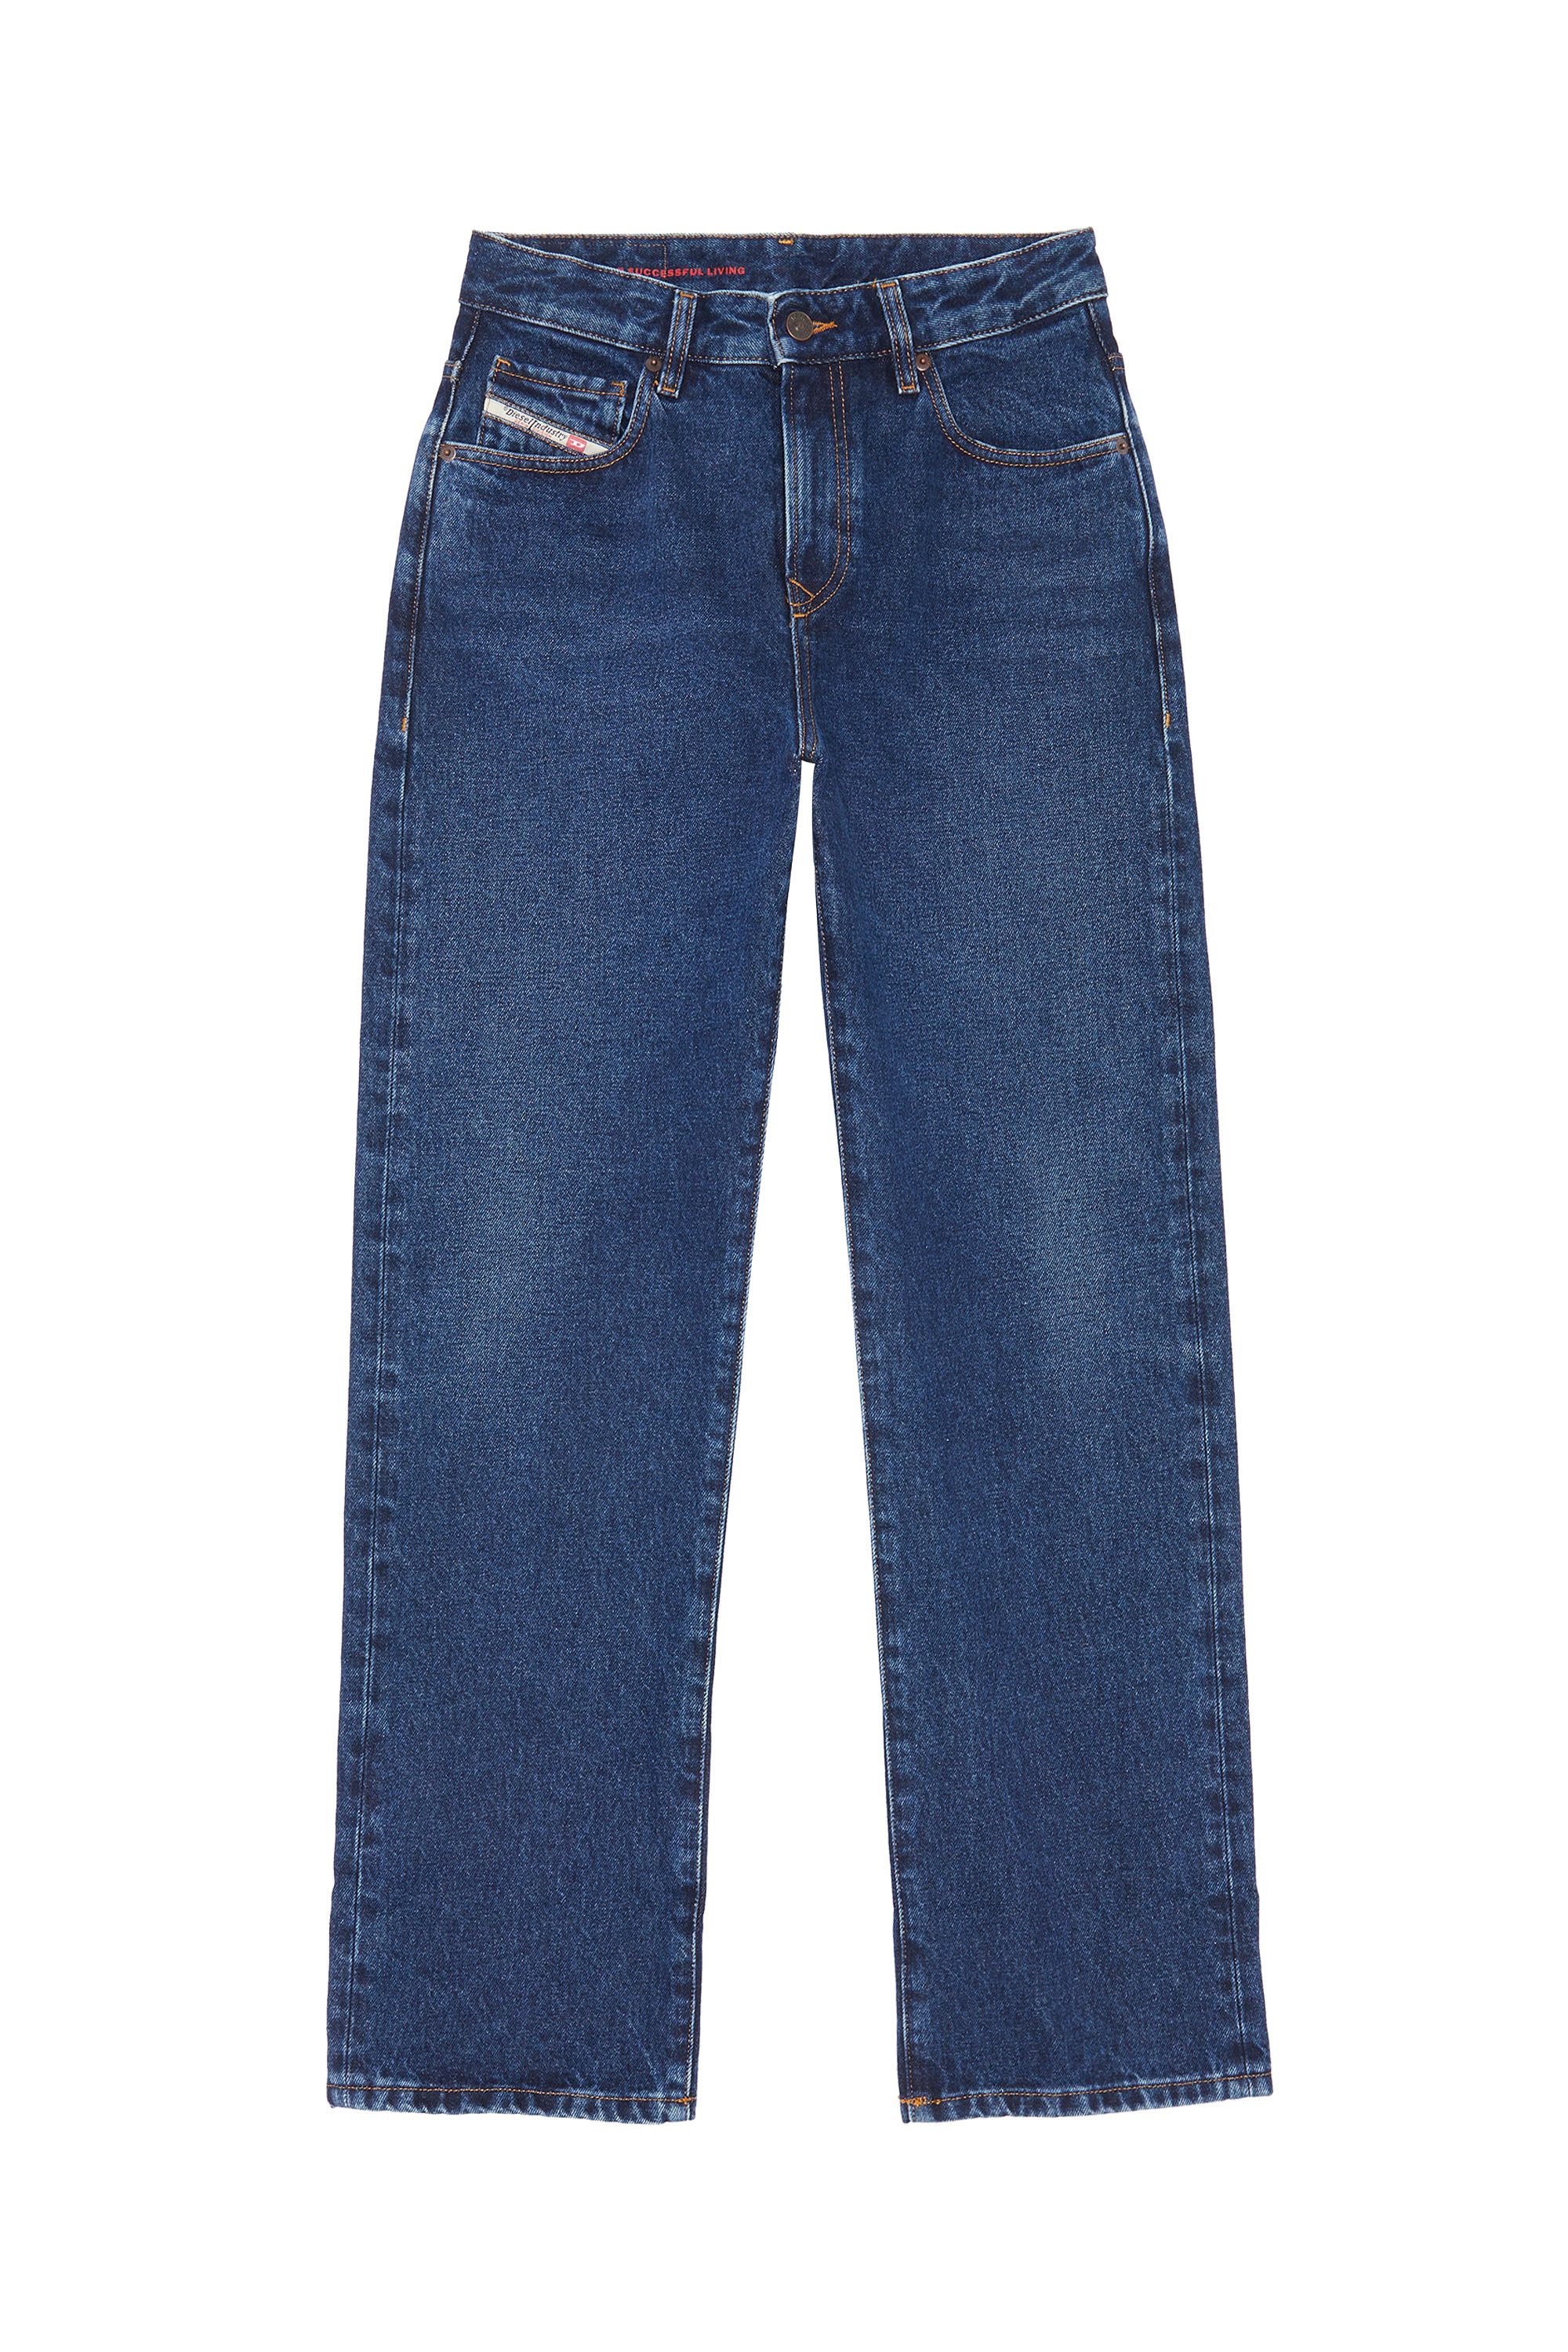 1999 007E6 Straight Jeans, Bleu Foncé - Jeans